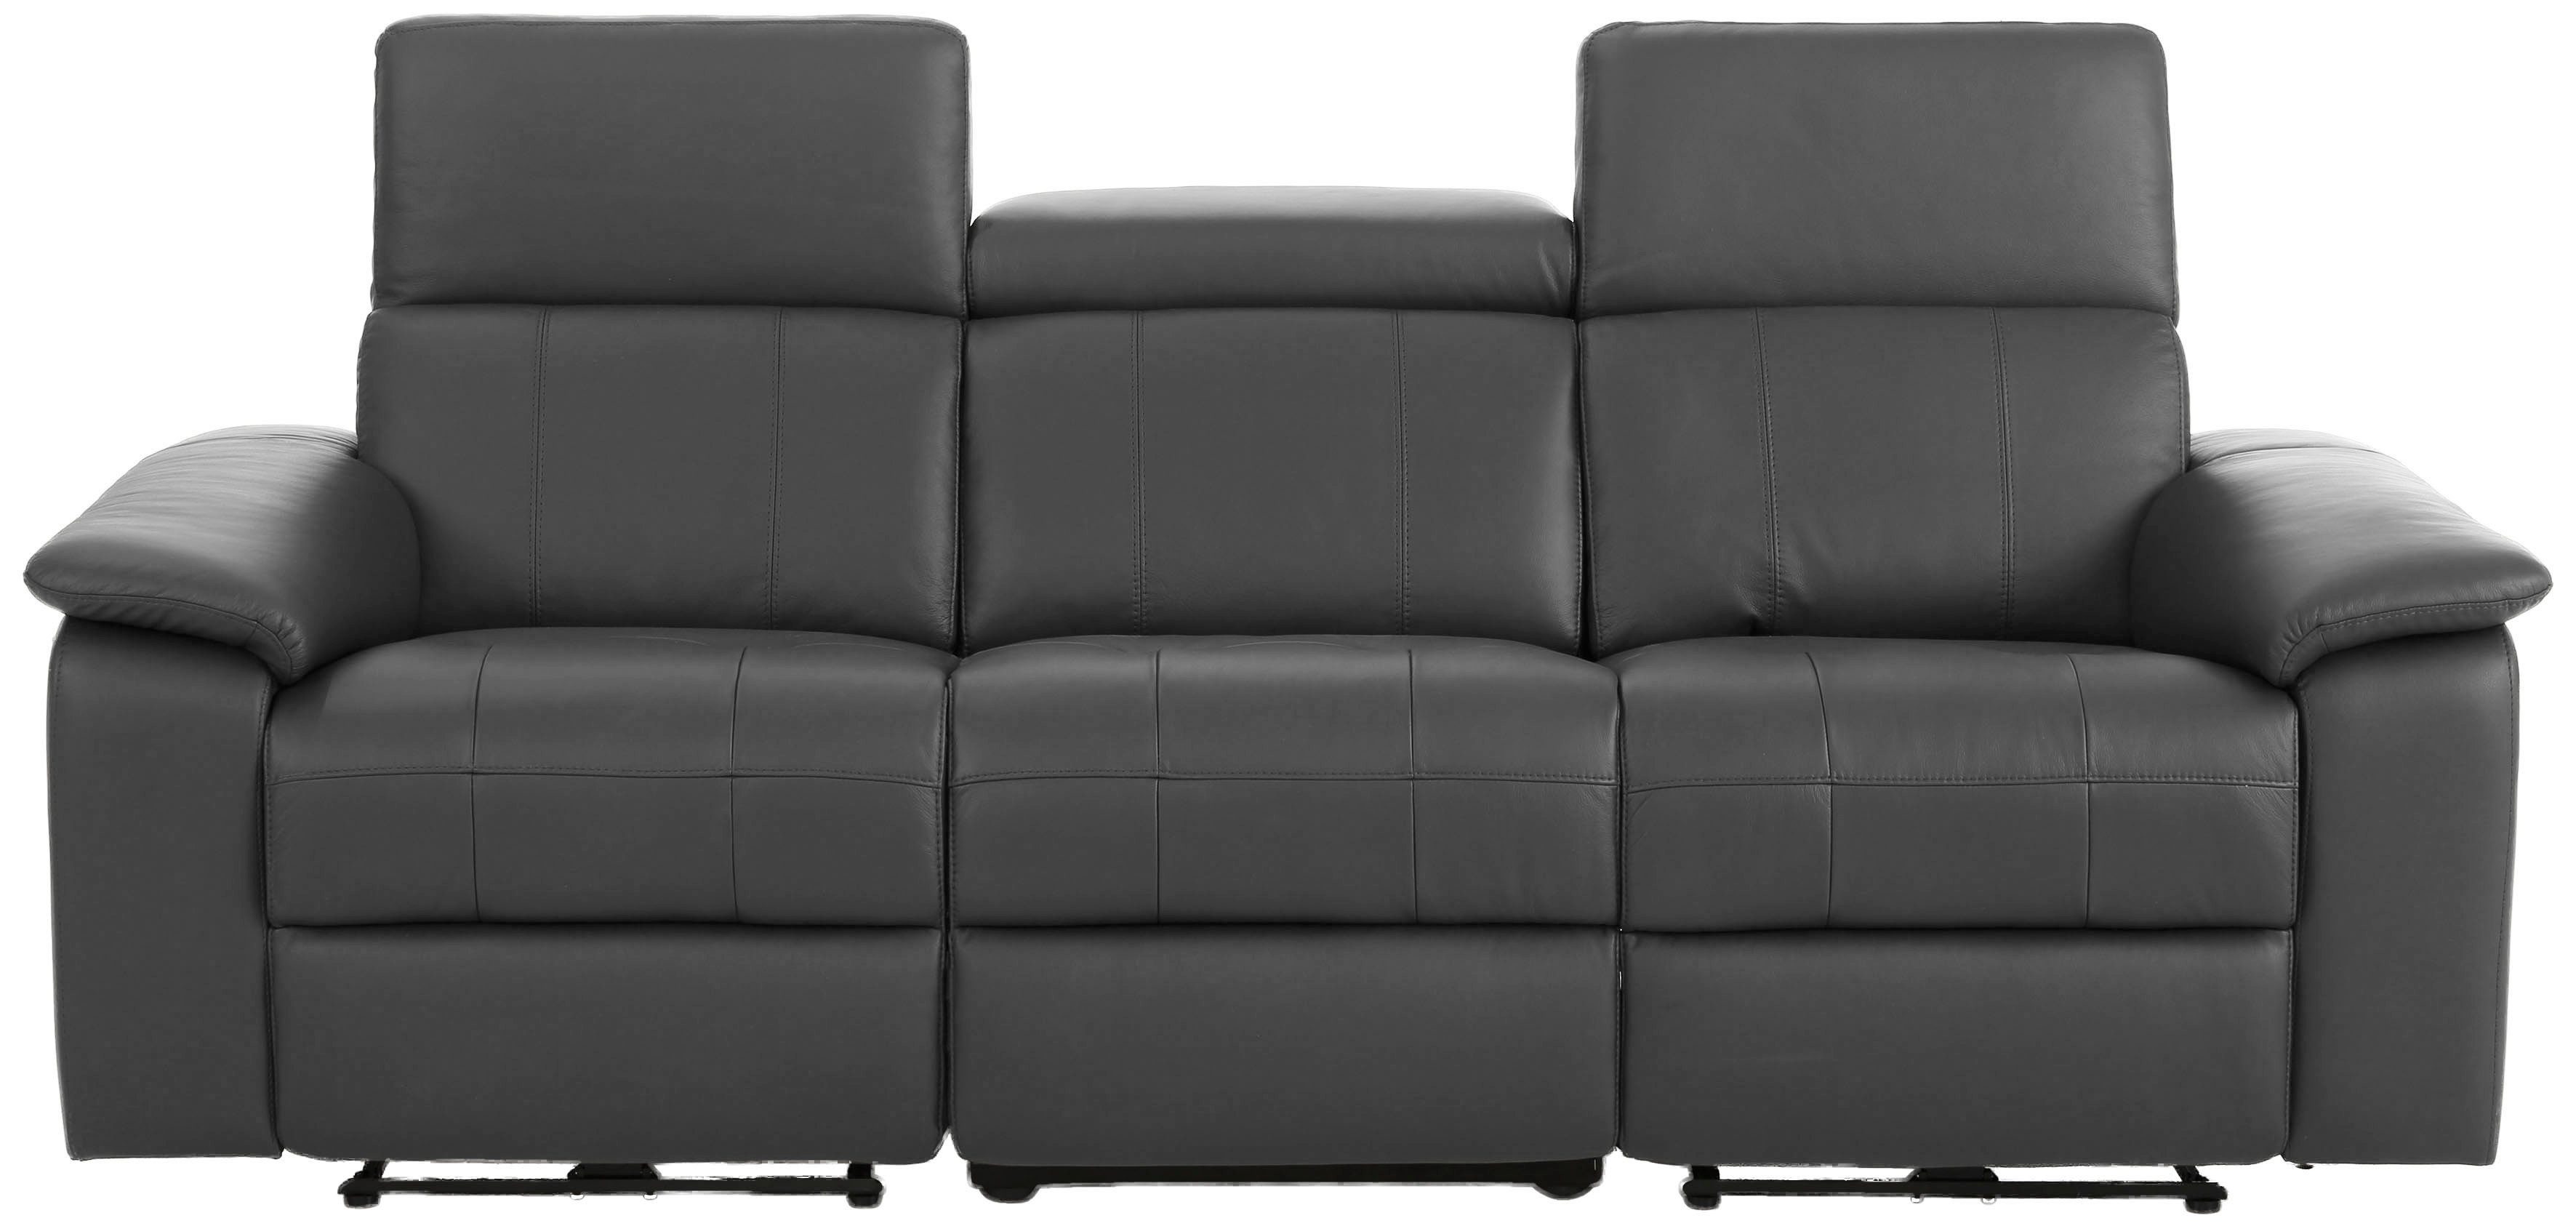 Home affaire 3-Sitzer Binado, mit manueller oder elektrischer Relaxfunktion mit USB-Anschluss